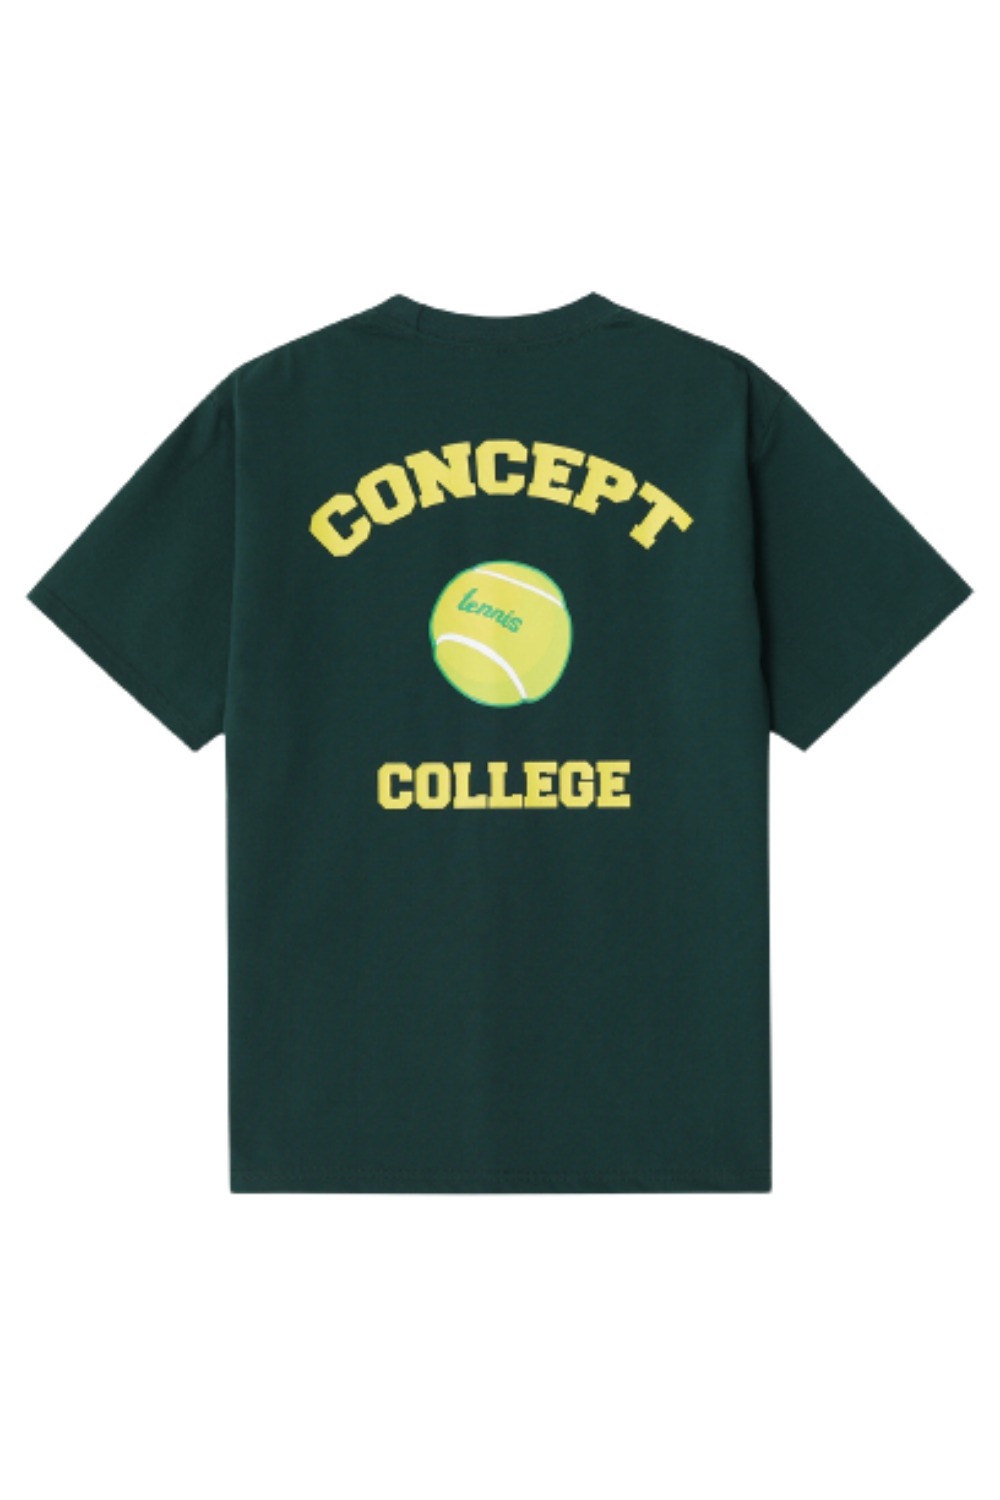 Tennis ball crew neck Unisex T-shirt (Dark green) RICHEZ